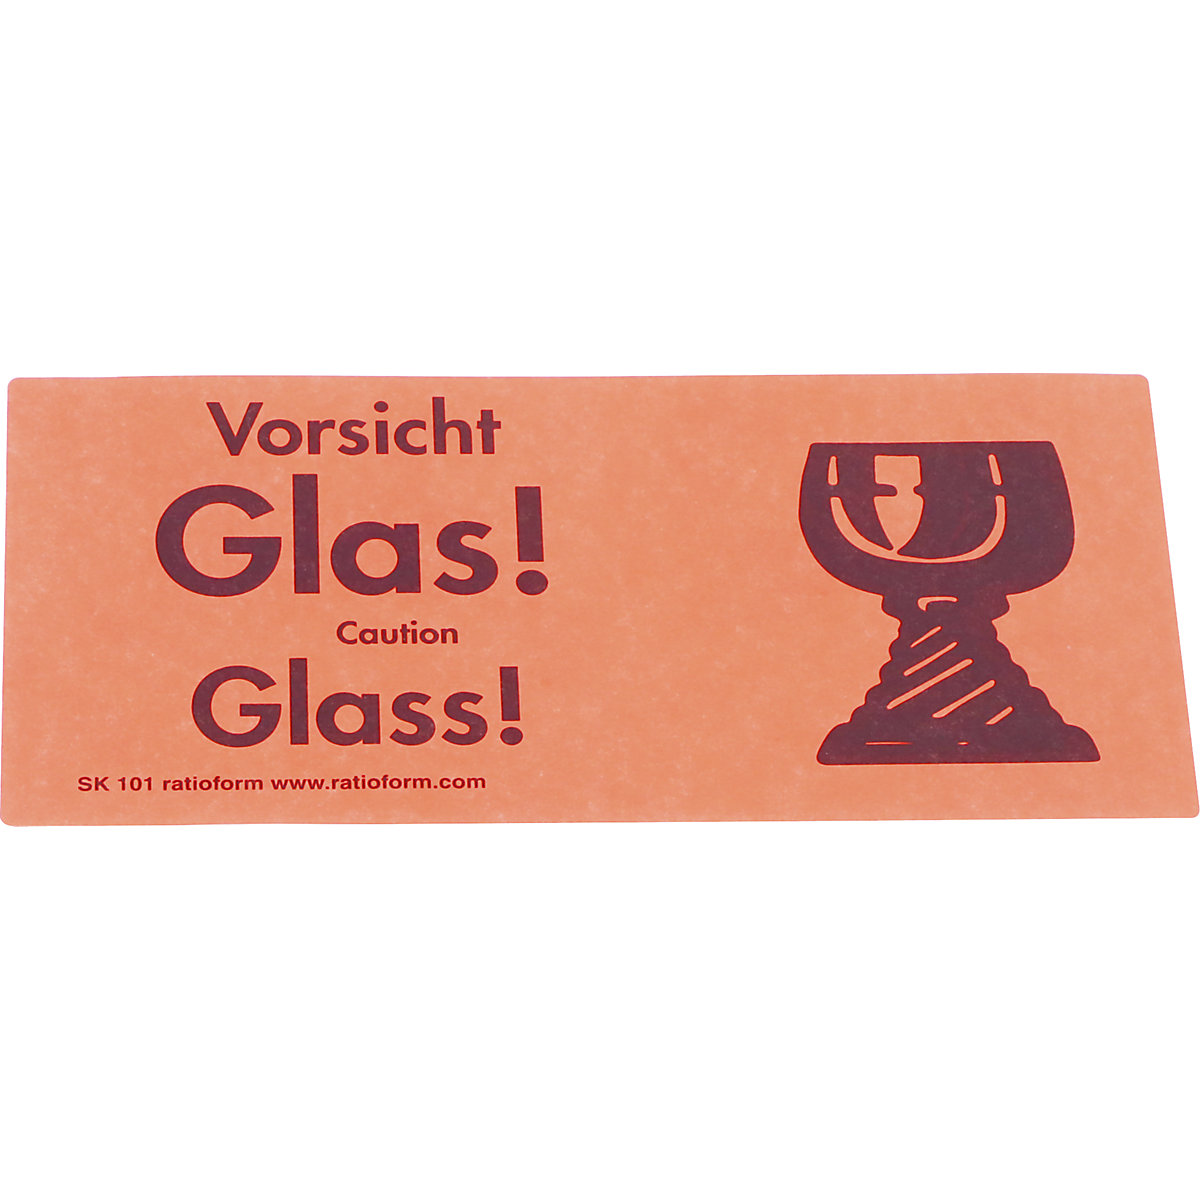 Aufkleber Etikett Vorsicht Glas Bitte nicht werfen Paket Post Versand Karton